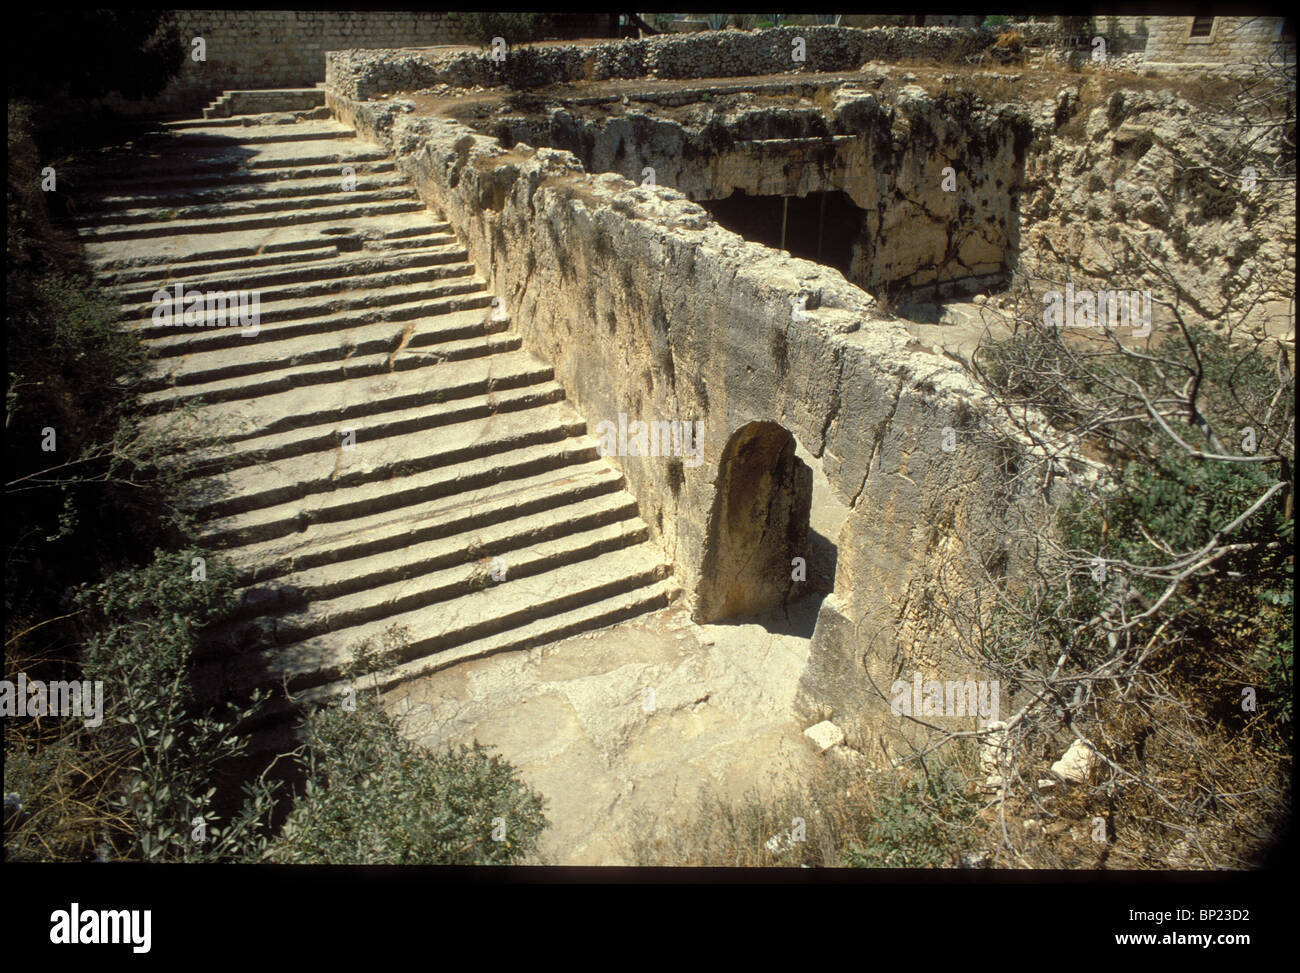 169. Las tumbas de los reyes, tumbas talladas de Roca en Jerusalén construido en el IST. C. AD. Por la reina Helena. Foto de stock